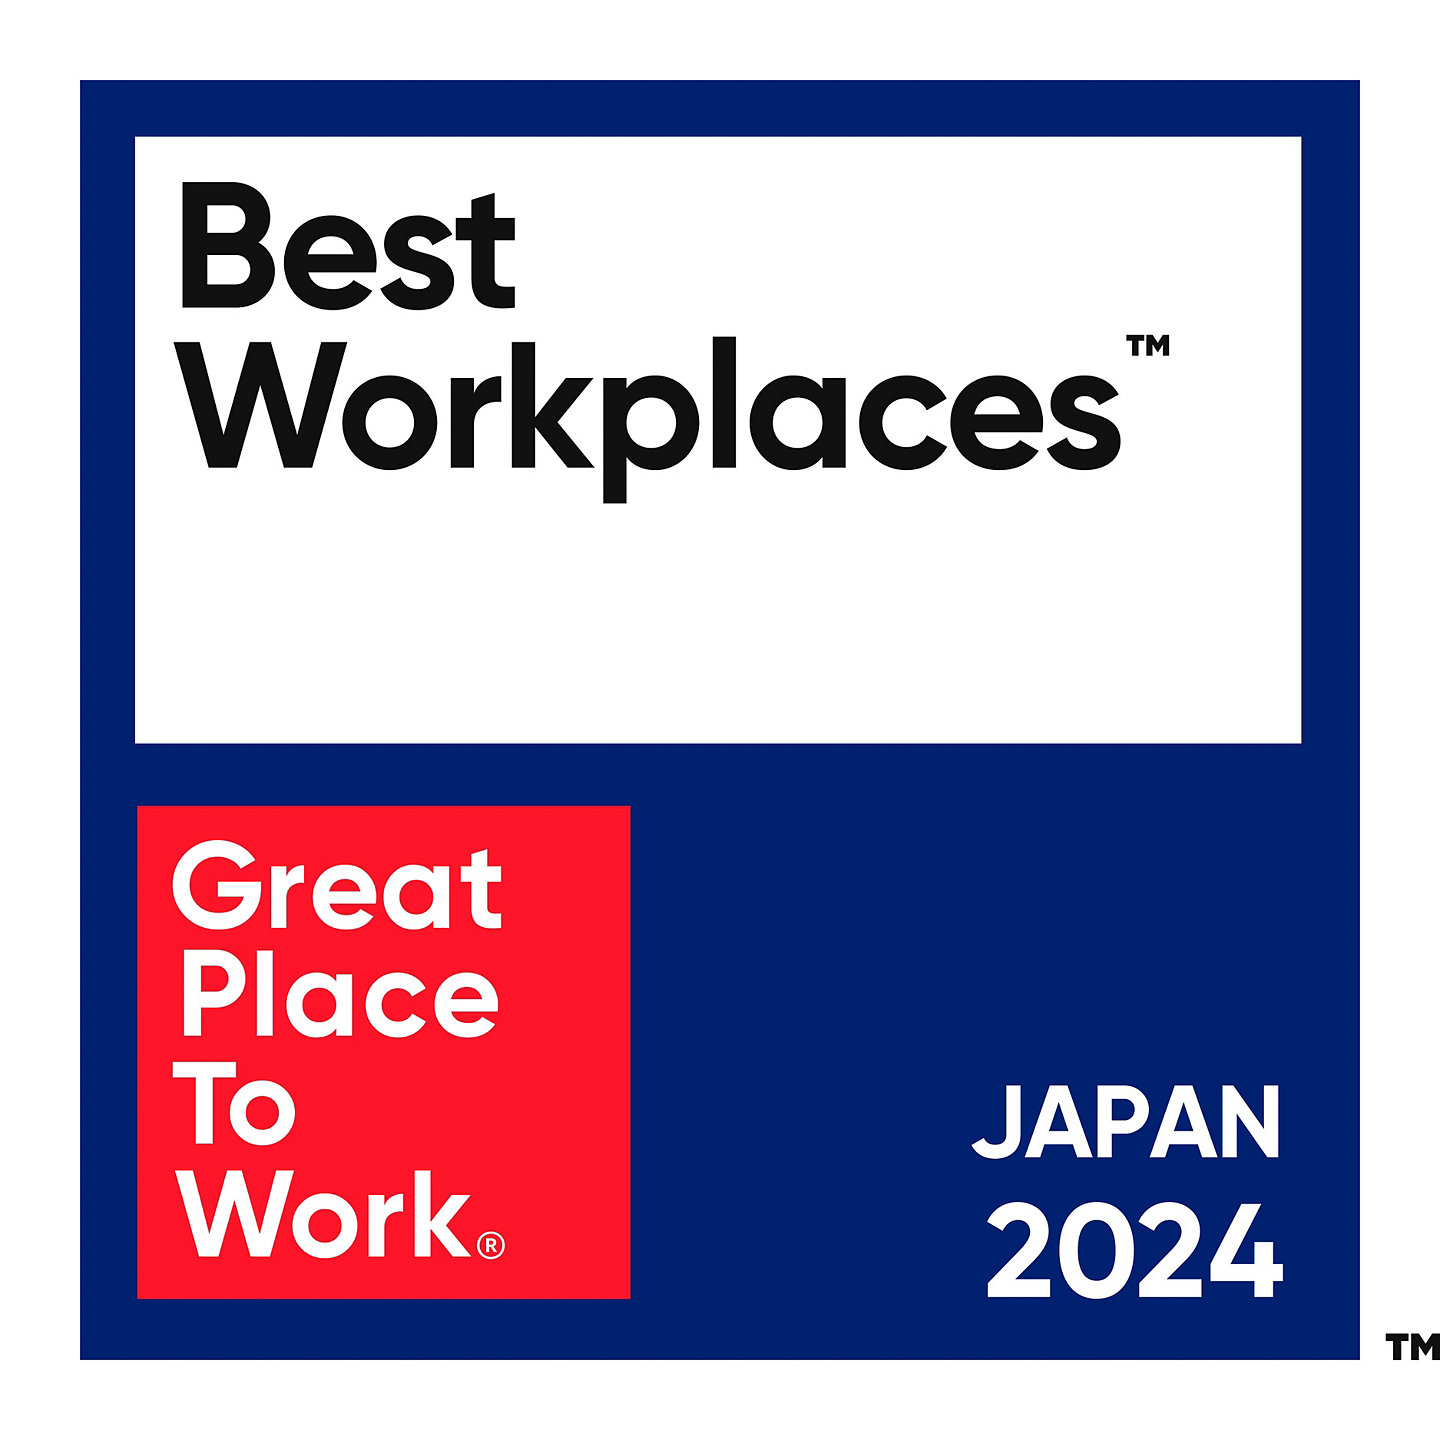 2024_Japan_Best Workplaces_color